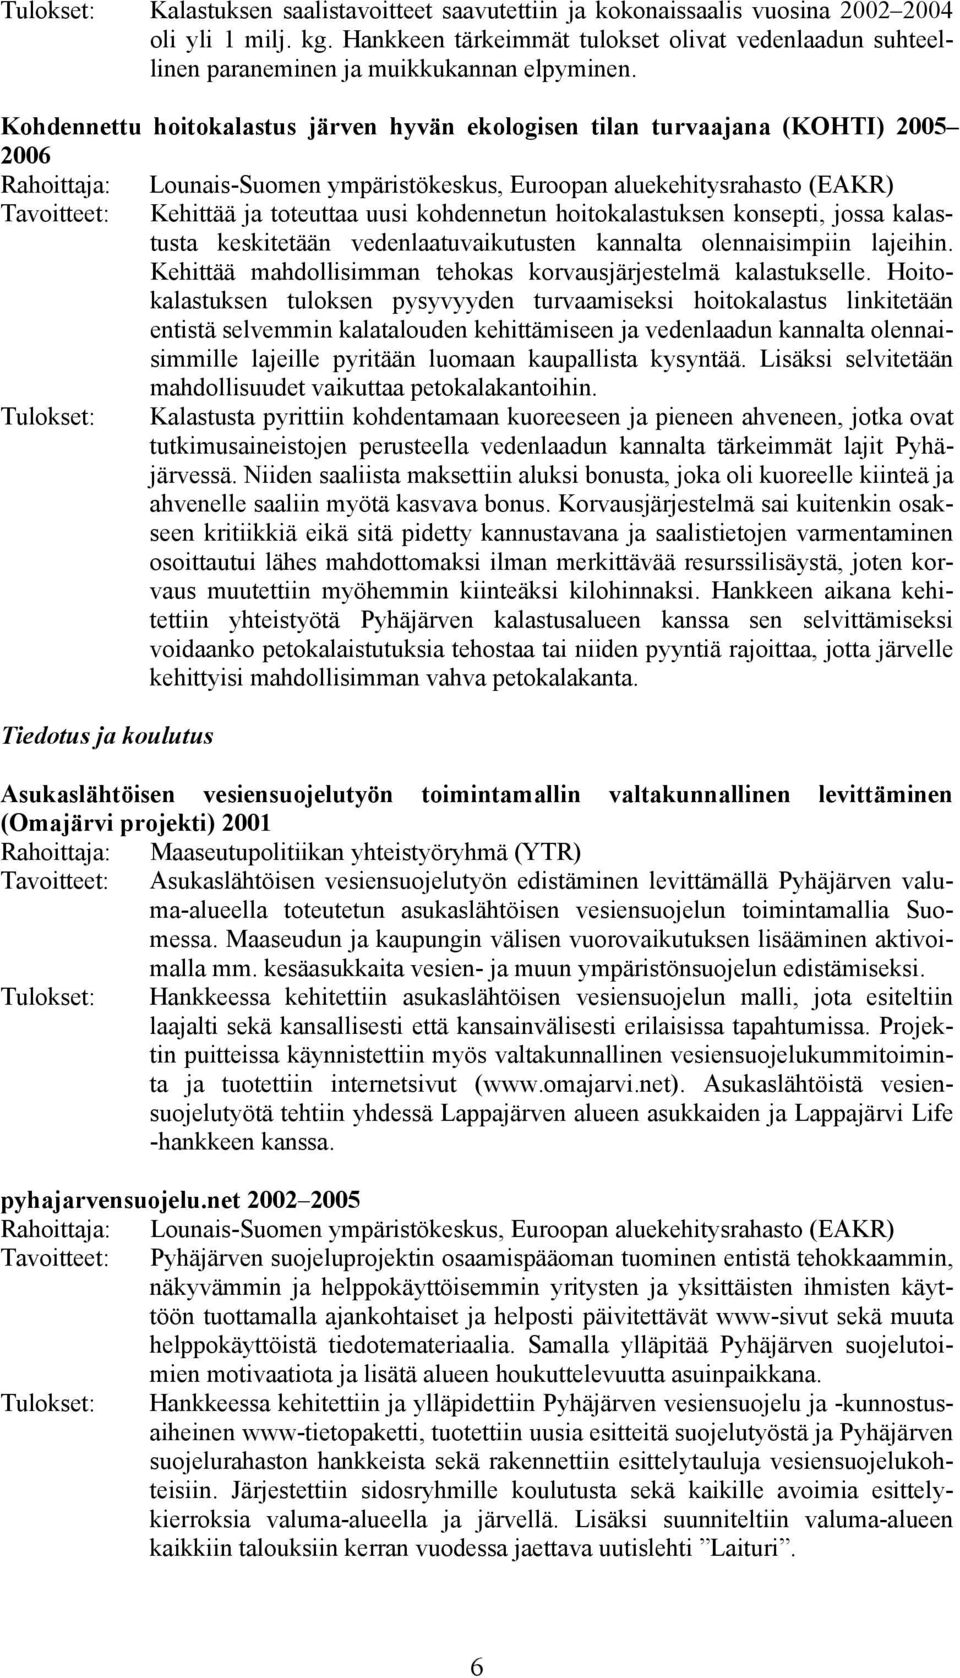 Kohdennettu hoitokalastus järven hyvän ekologisen tilan turvaajana (KOHTI) 2005 2006 Rahoittaja: Lounais-Suomen ympäristökeskus, Euroopan aluekehitysrahasto (EAKR) Tavoitteet: Kehittää ja toteuttaa